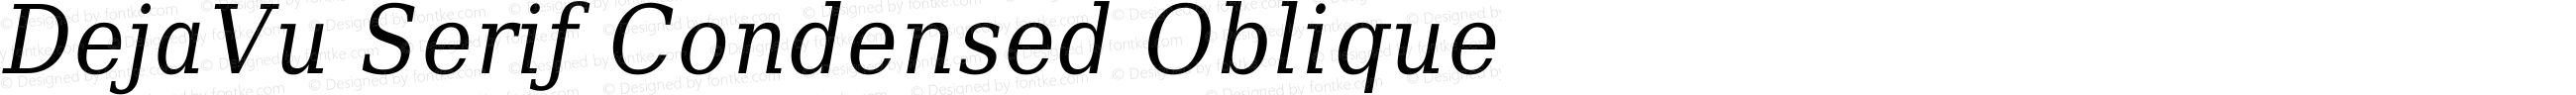 DejaVu Serif Condensed Oblique